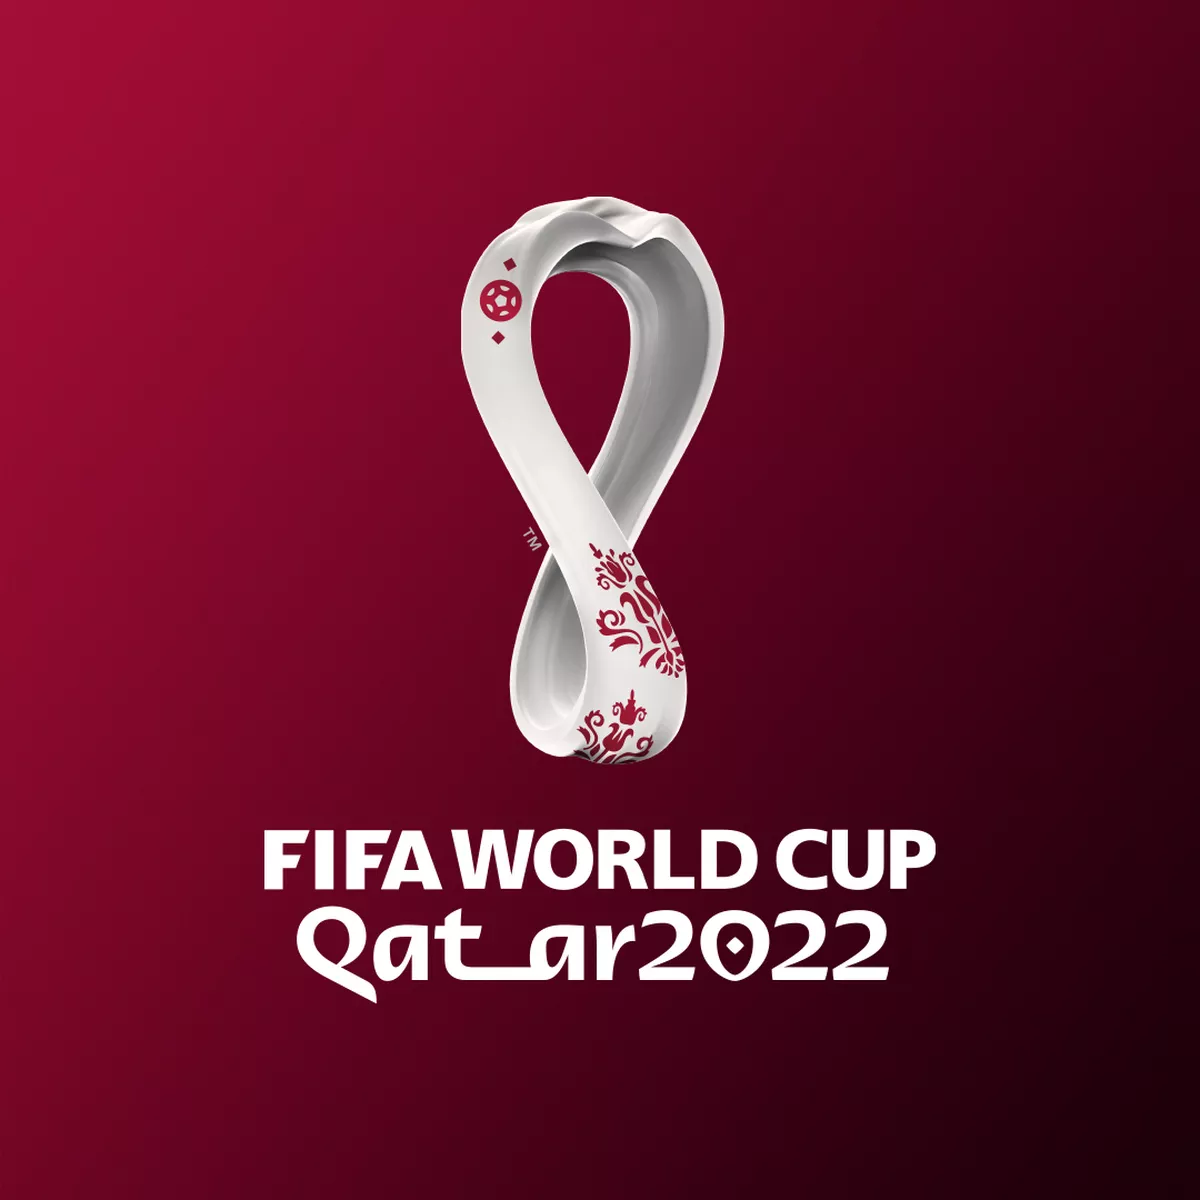 Campeonato Brasileiro 2022: datas, partidas e mais informações da competição